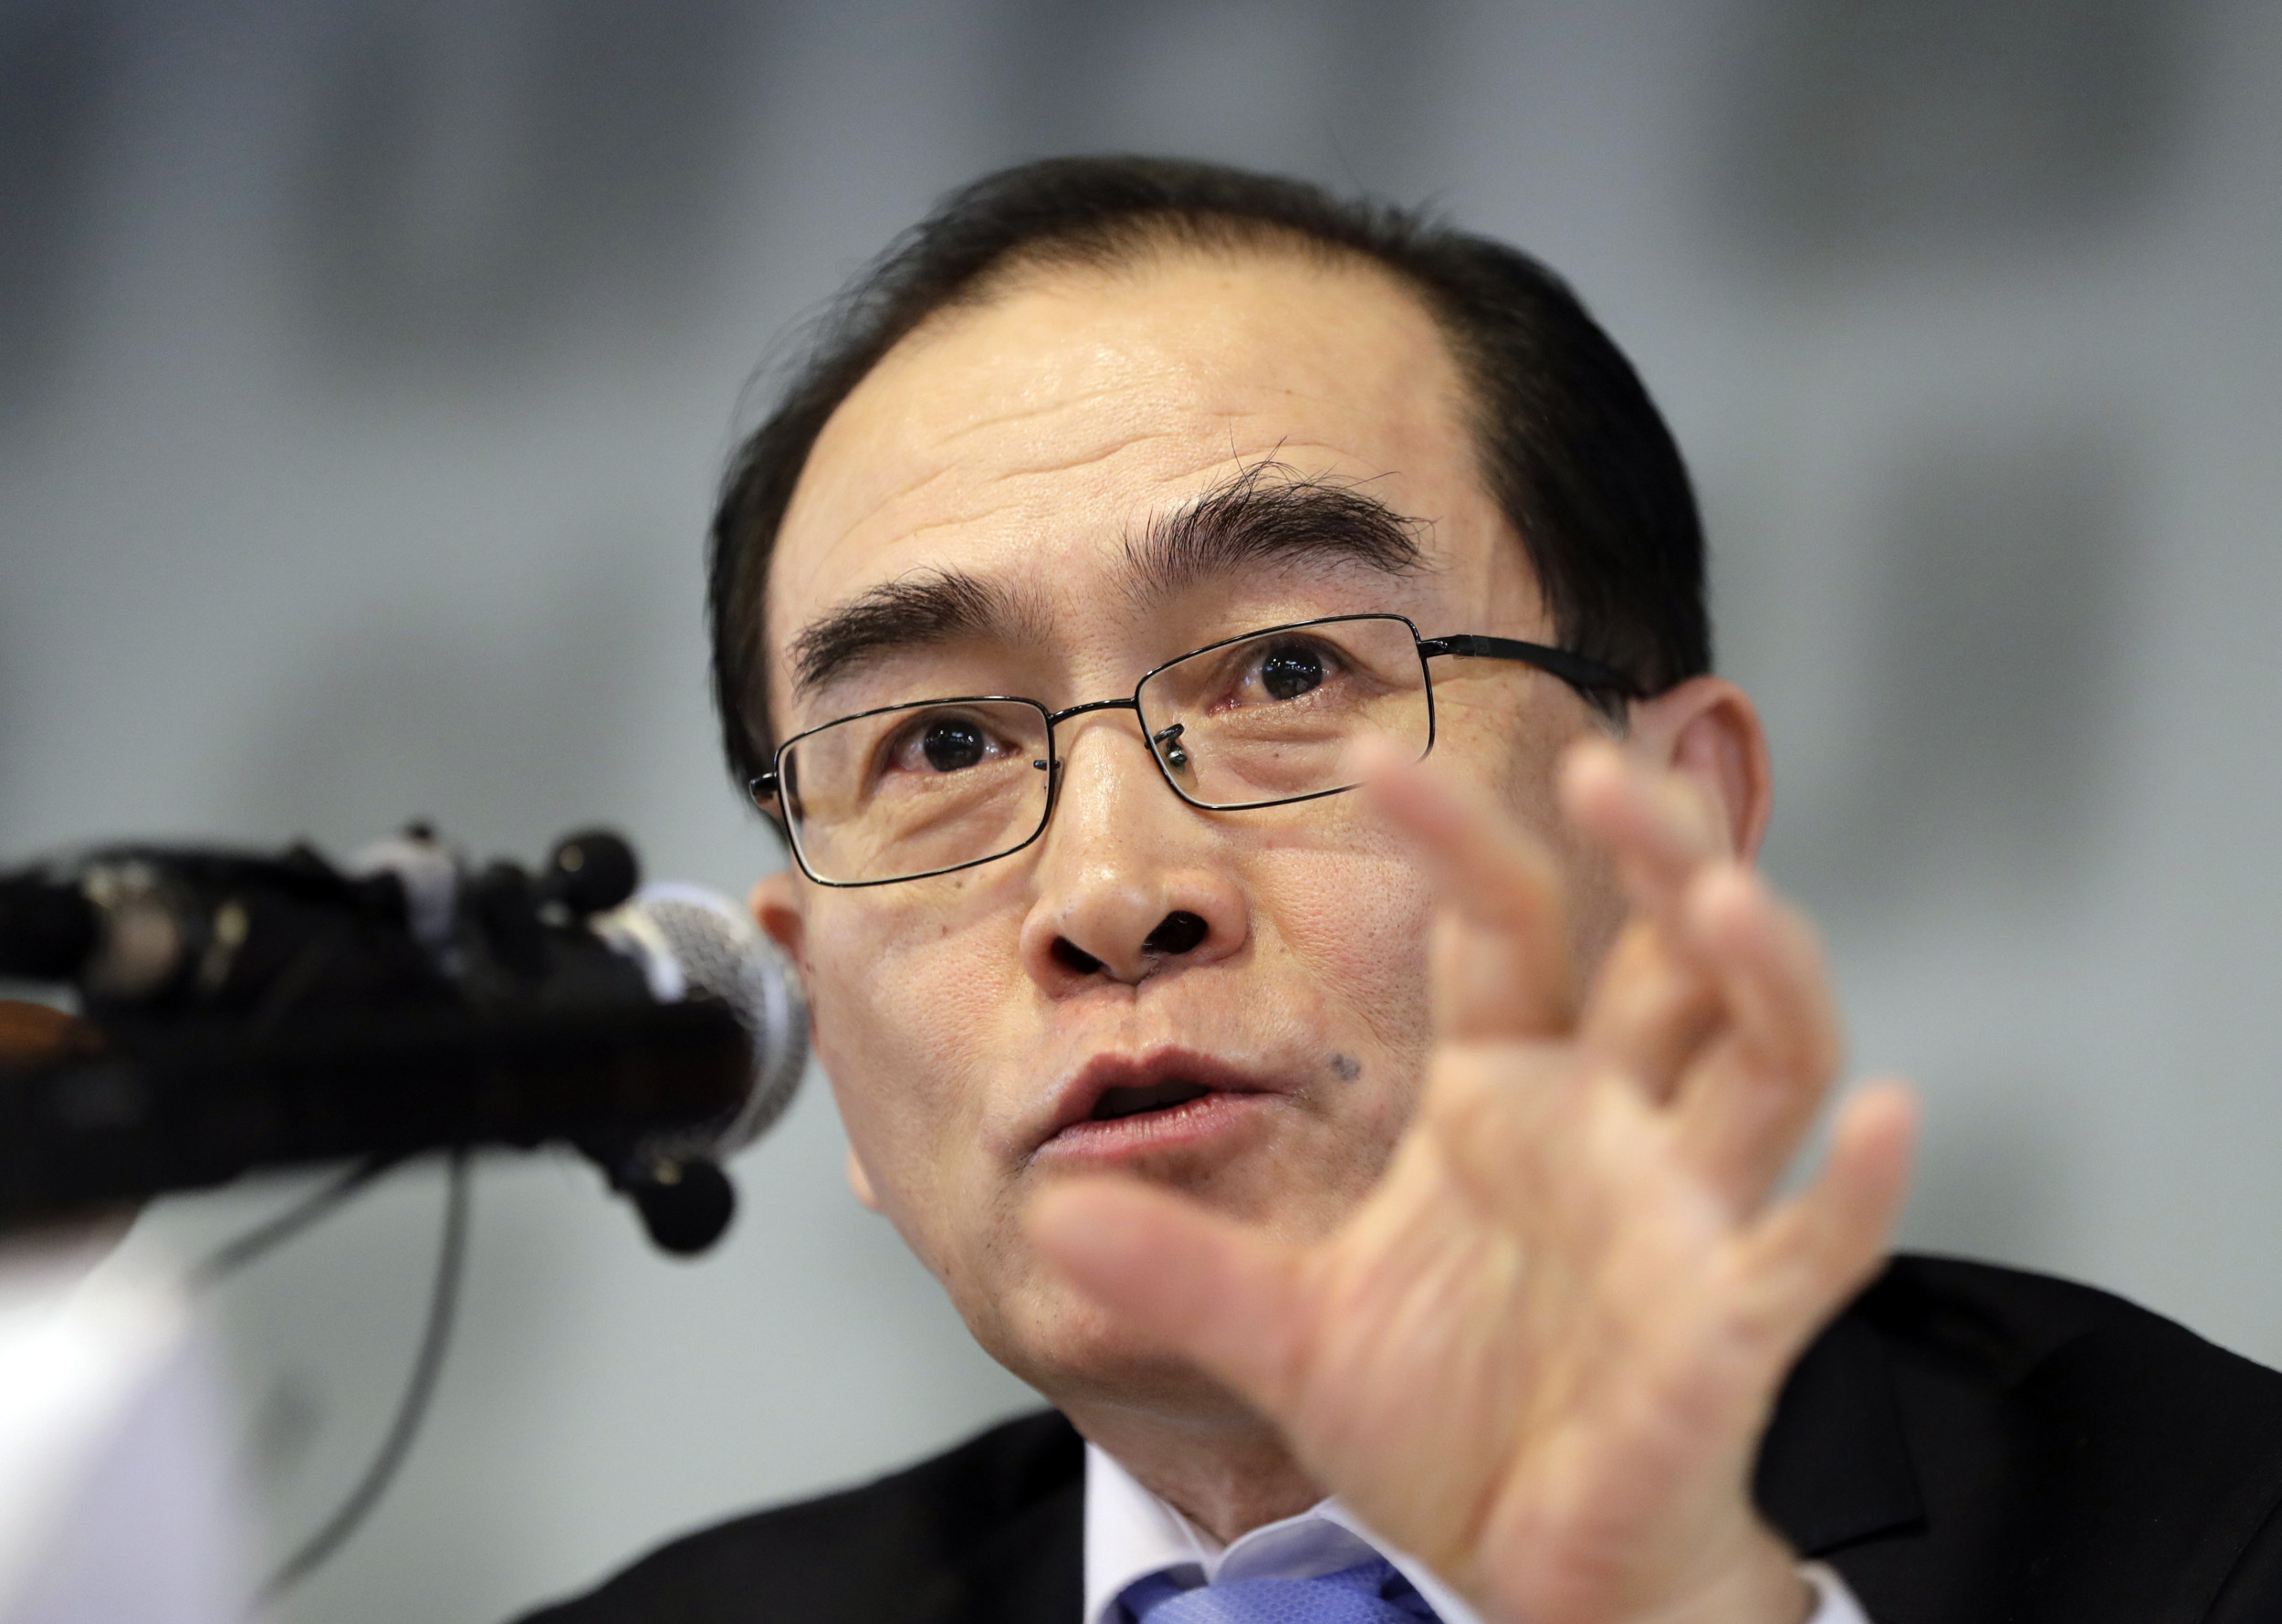 전직 북한 외교관이 남한의 부총리로 임명됐다.